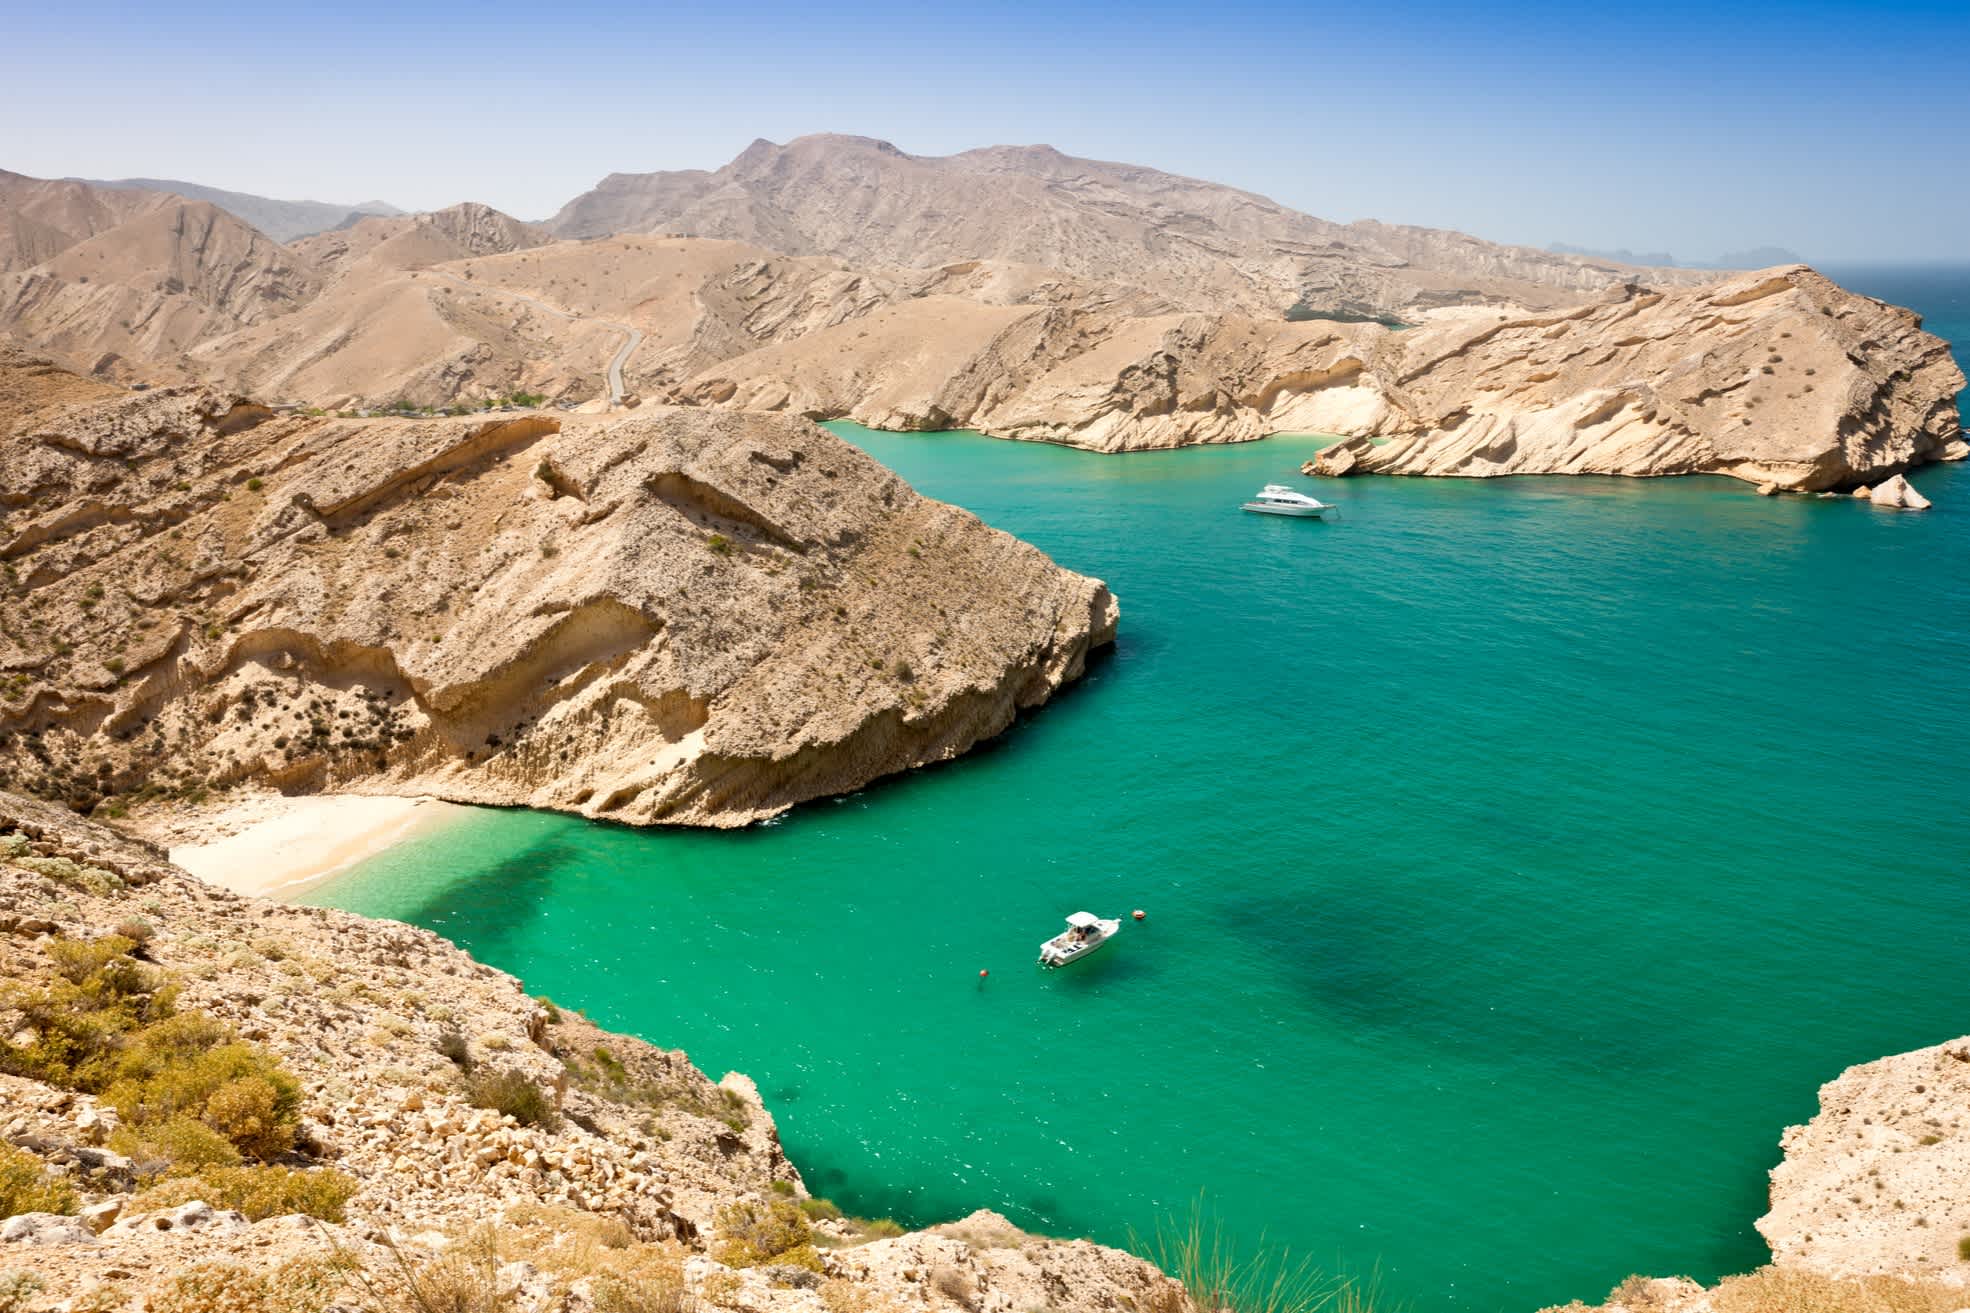 Lagune an der Küste Omans von oben gesehen mit Booten